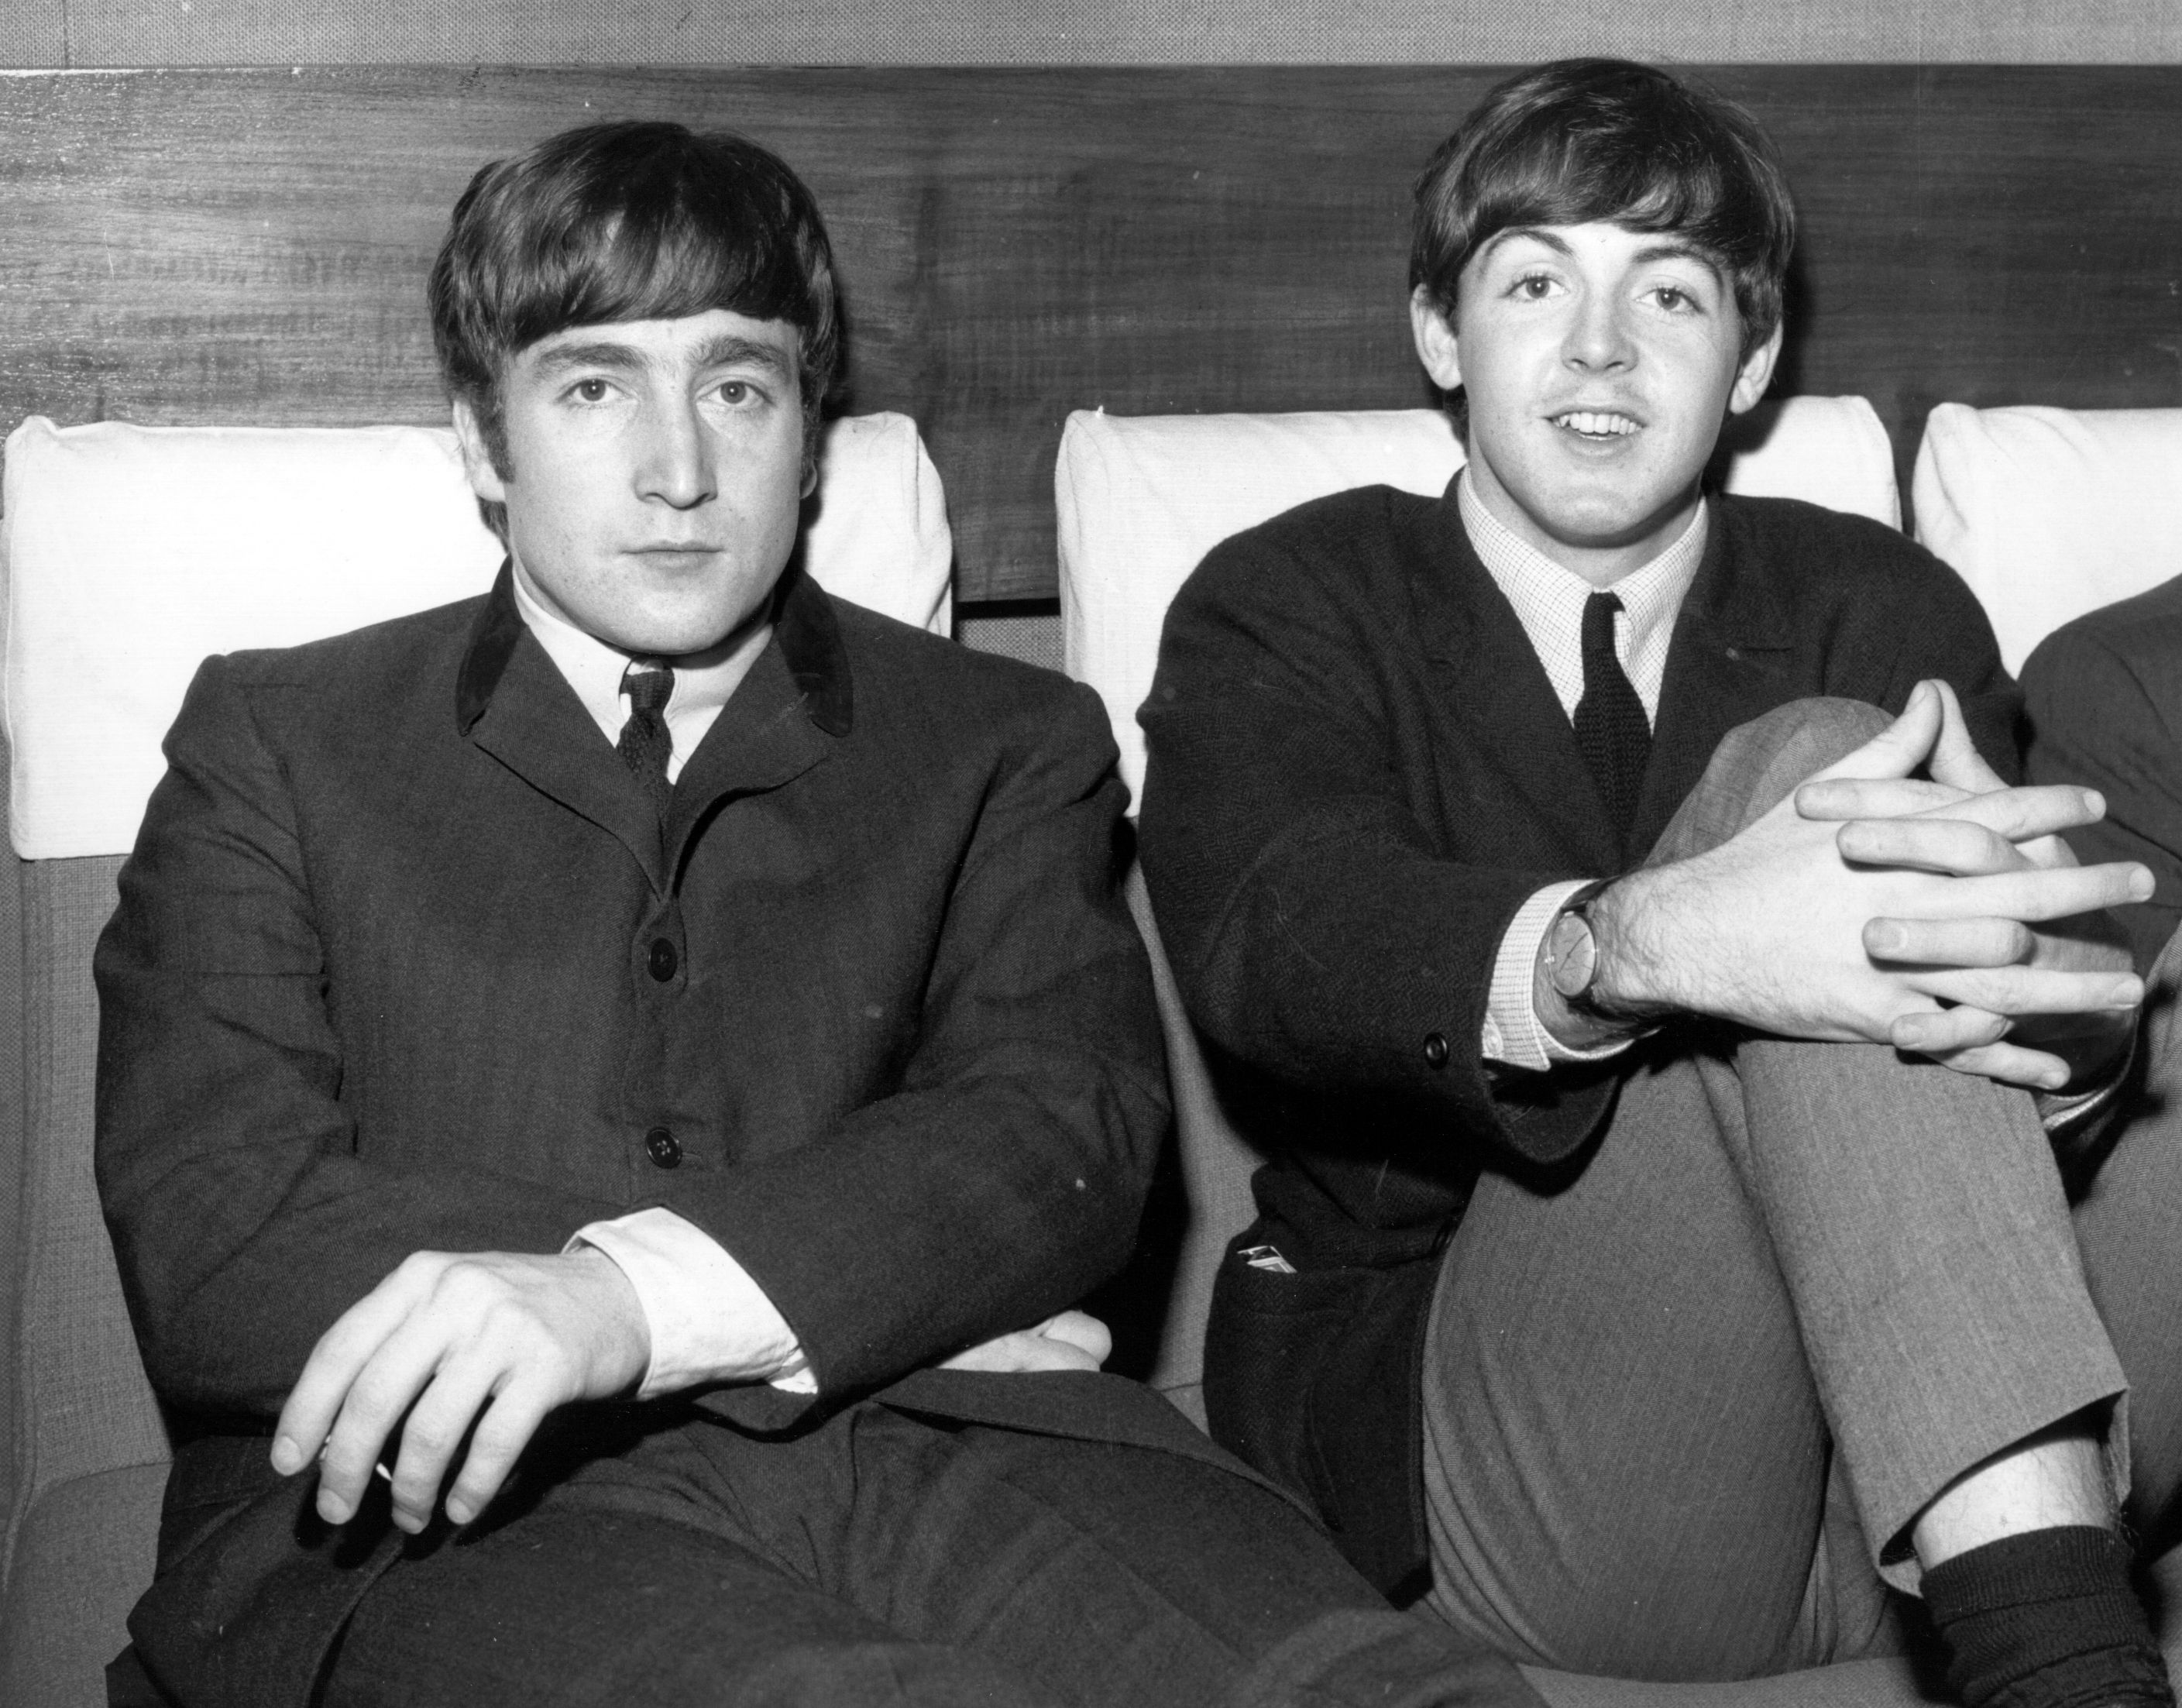 John Lennon sitting next to Paul McCartney